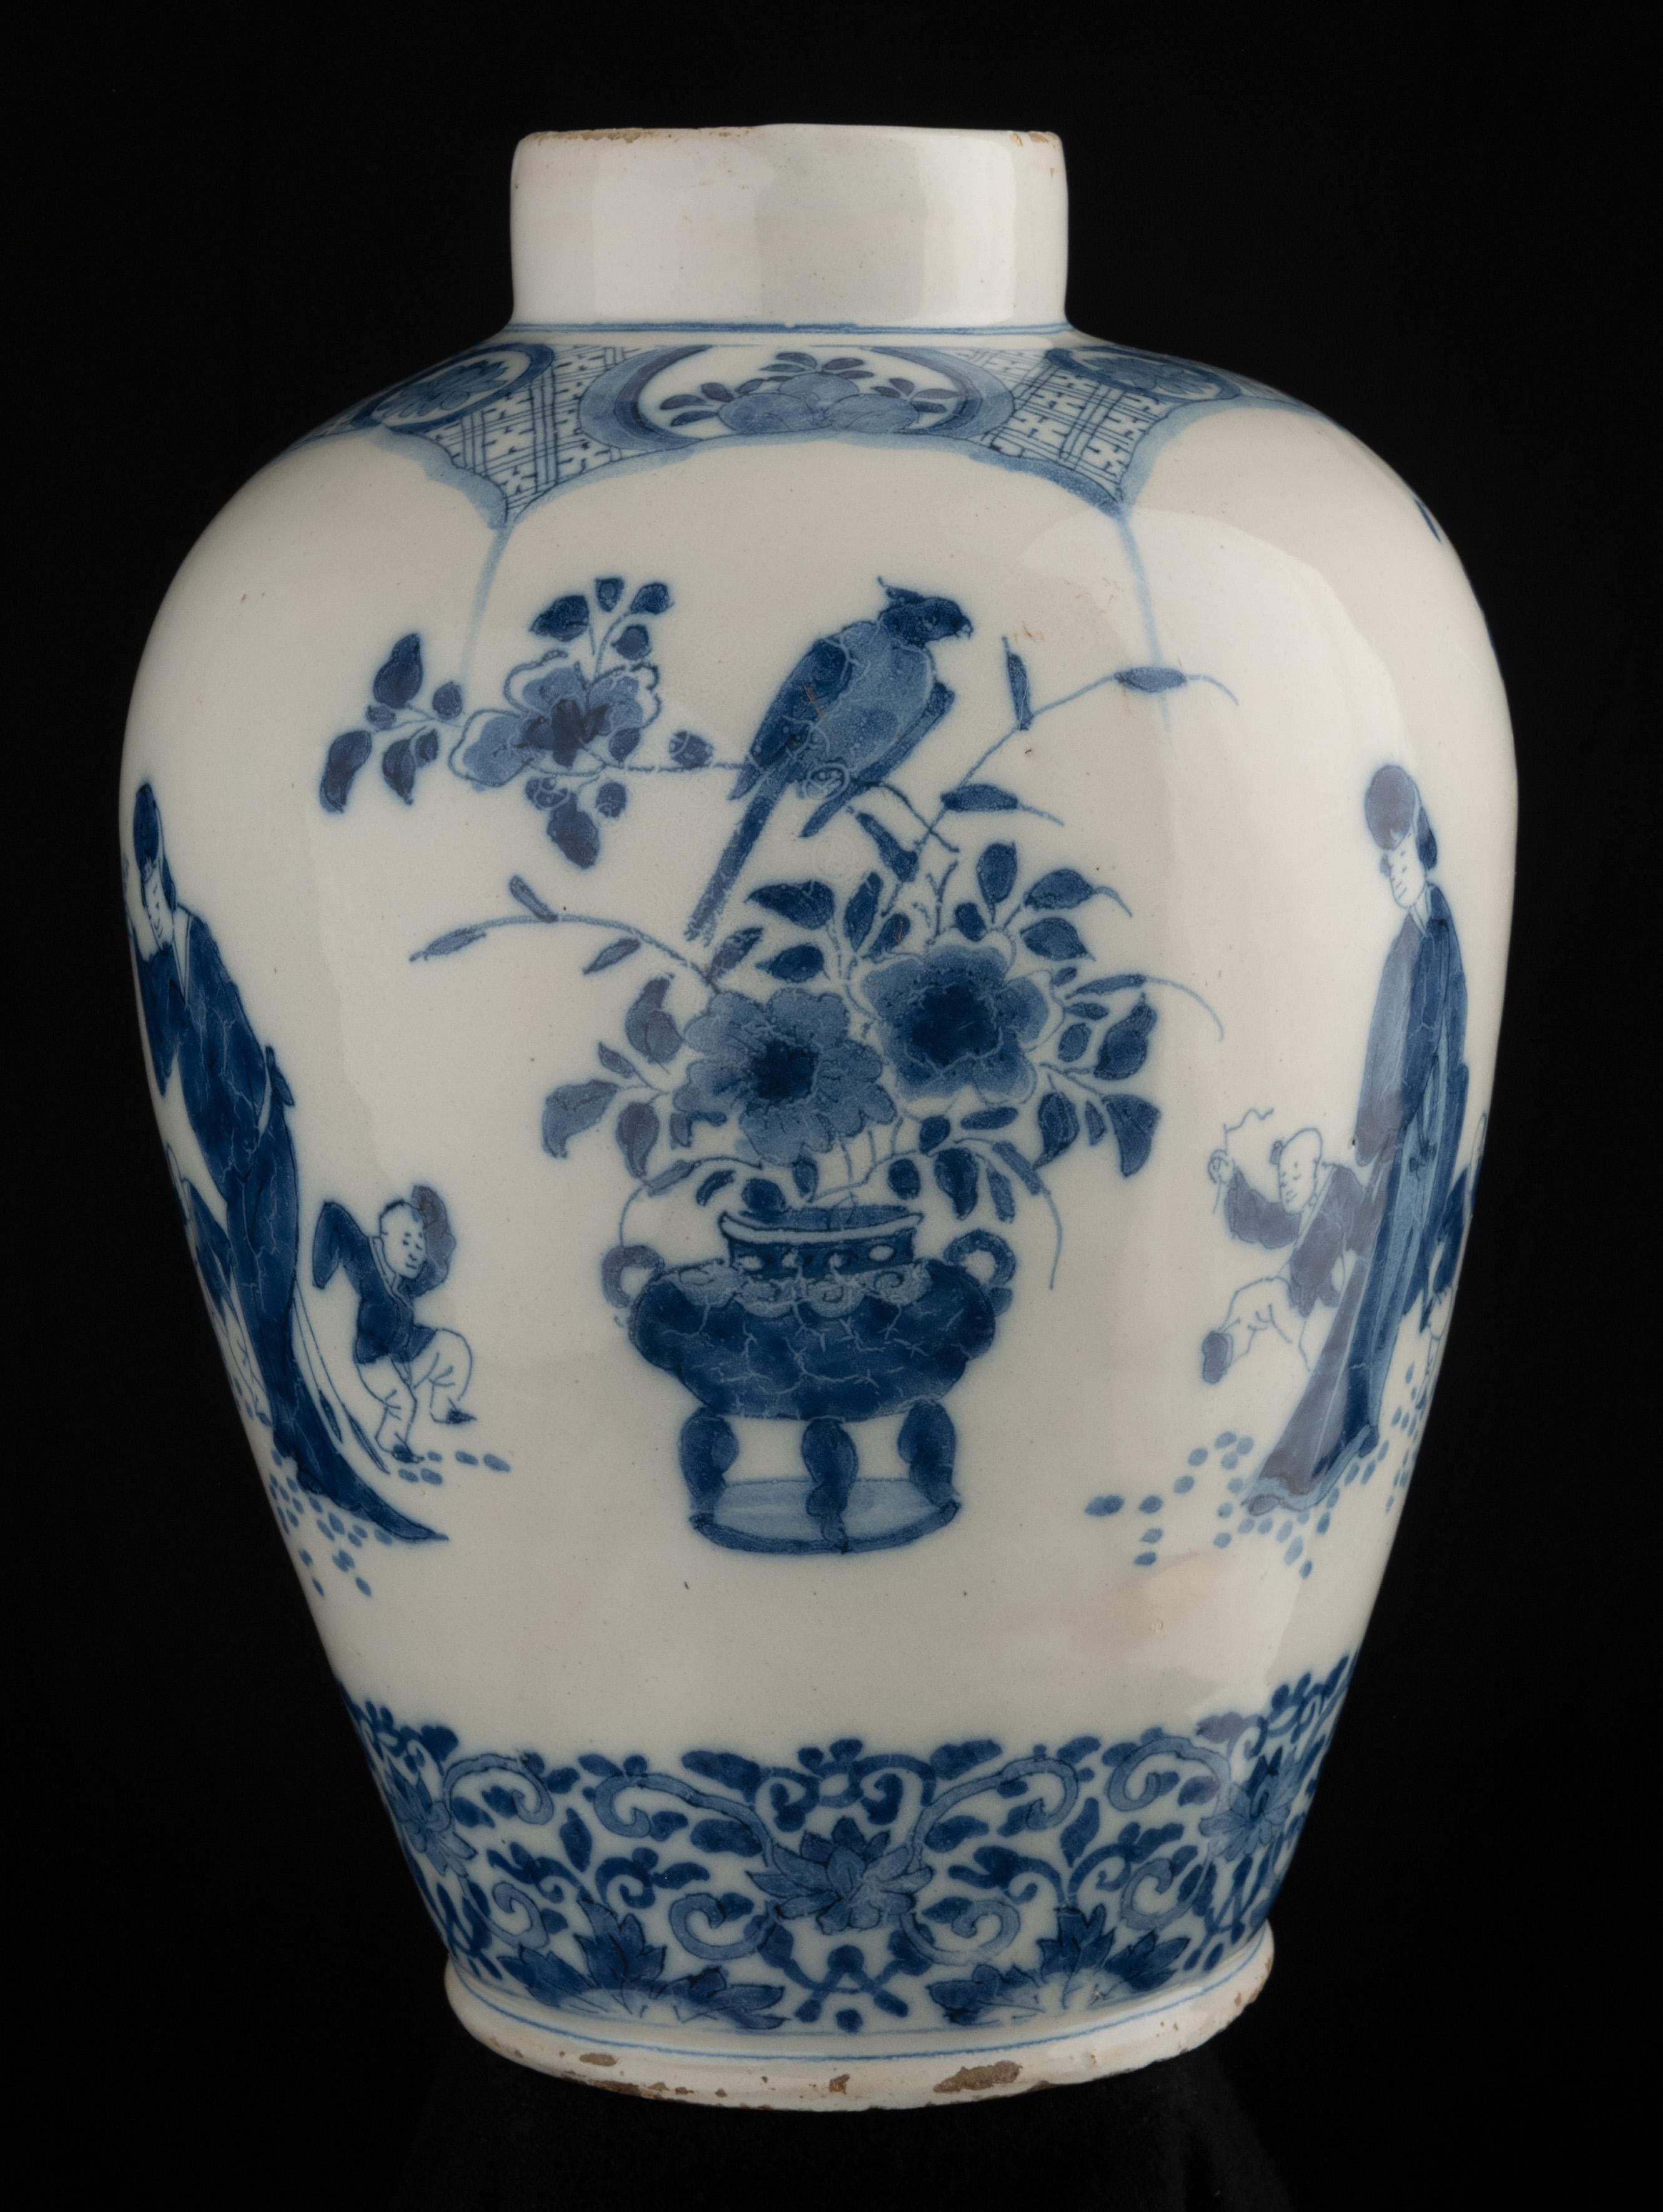 Jarre chinoise bleue et blanche
Delft, 1700-1720
La jarre a un col étroit et droit et est peinte en bleu avec un décor de chinoiserie. Autour du ventre se trouvent trois scènes représentant une femme chinoise avec deux enfants qui dansent. Trois